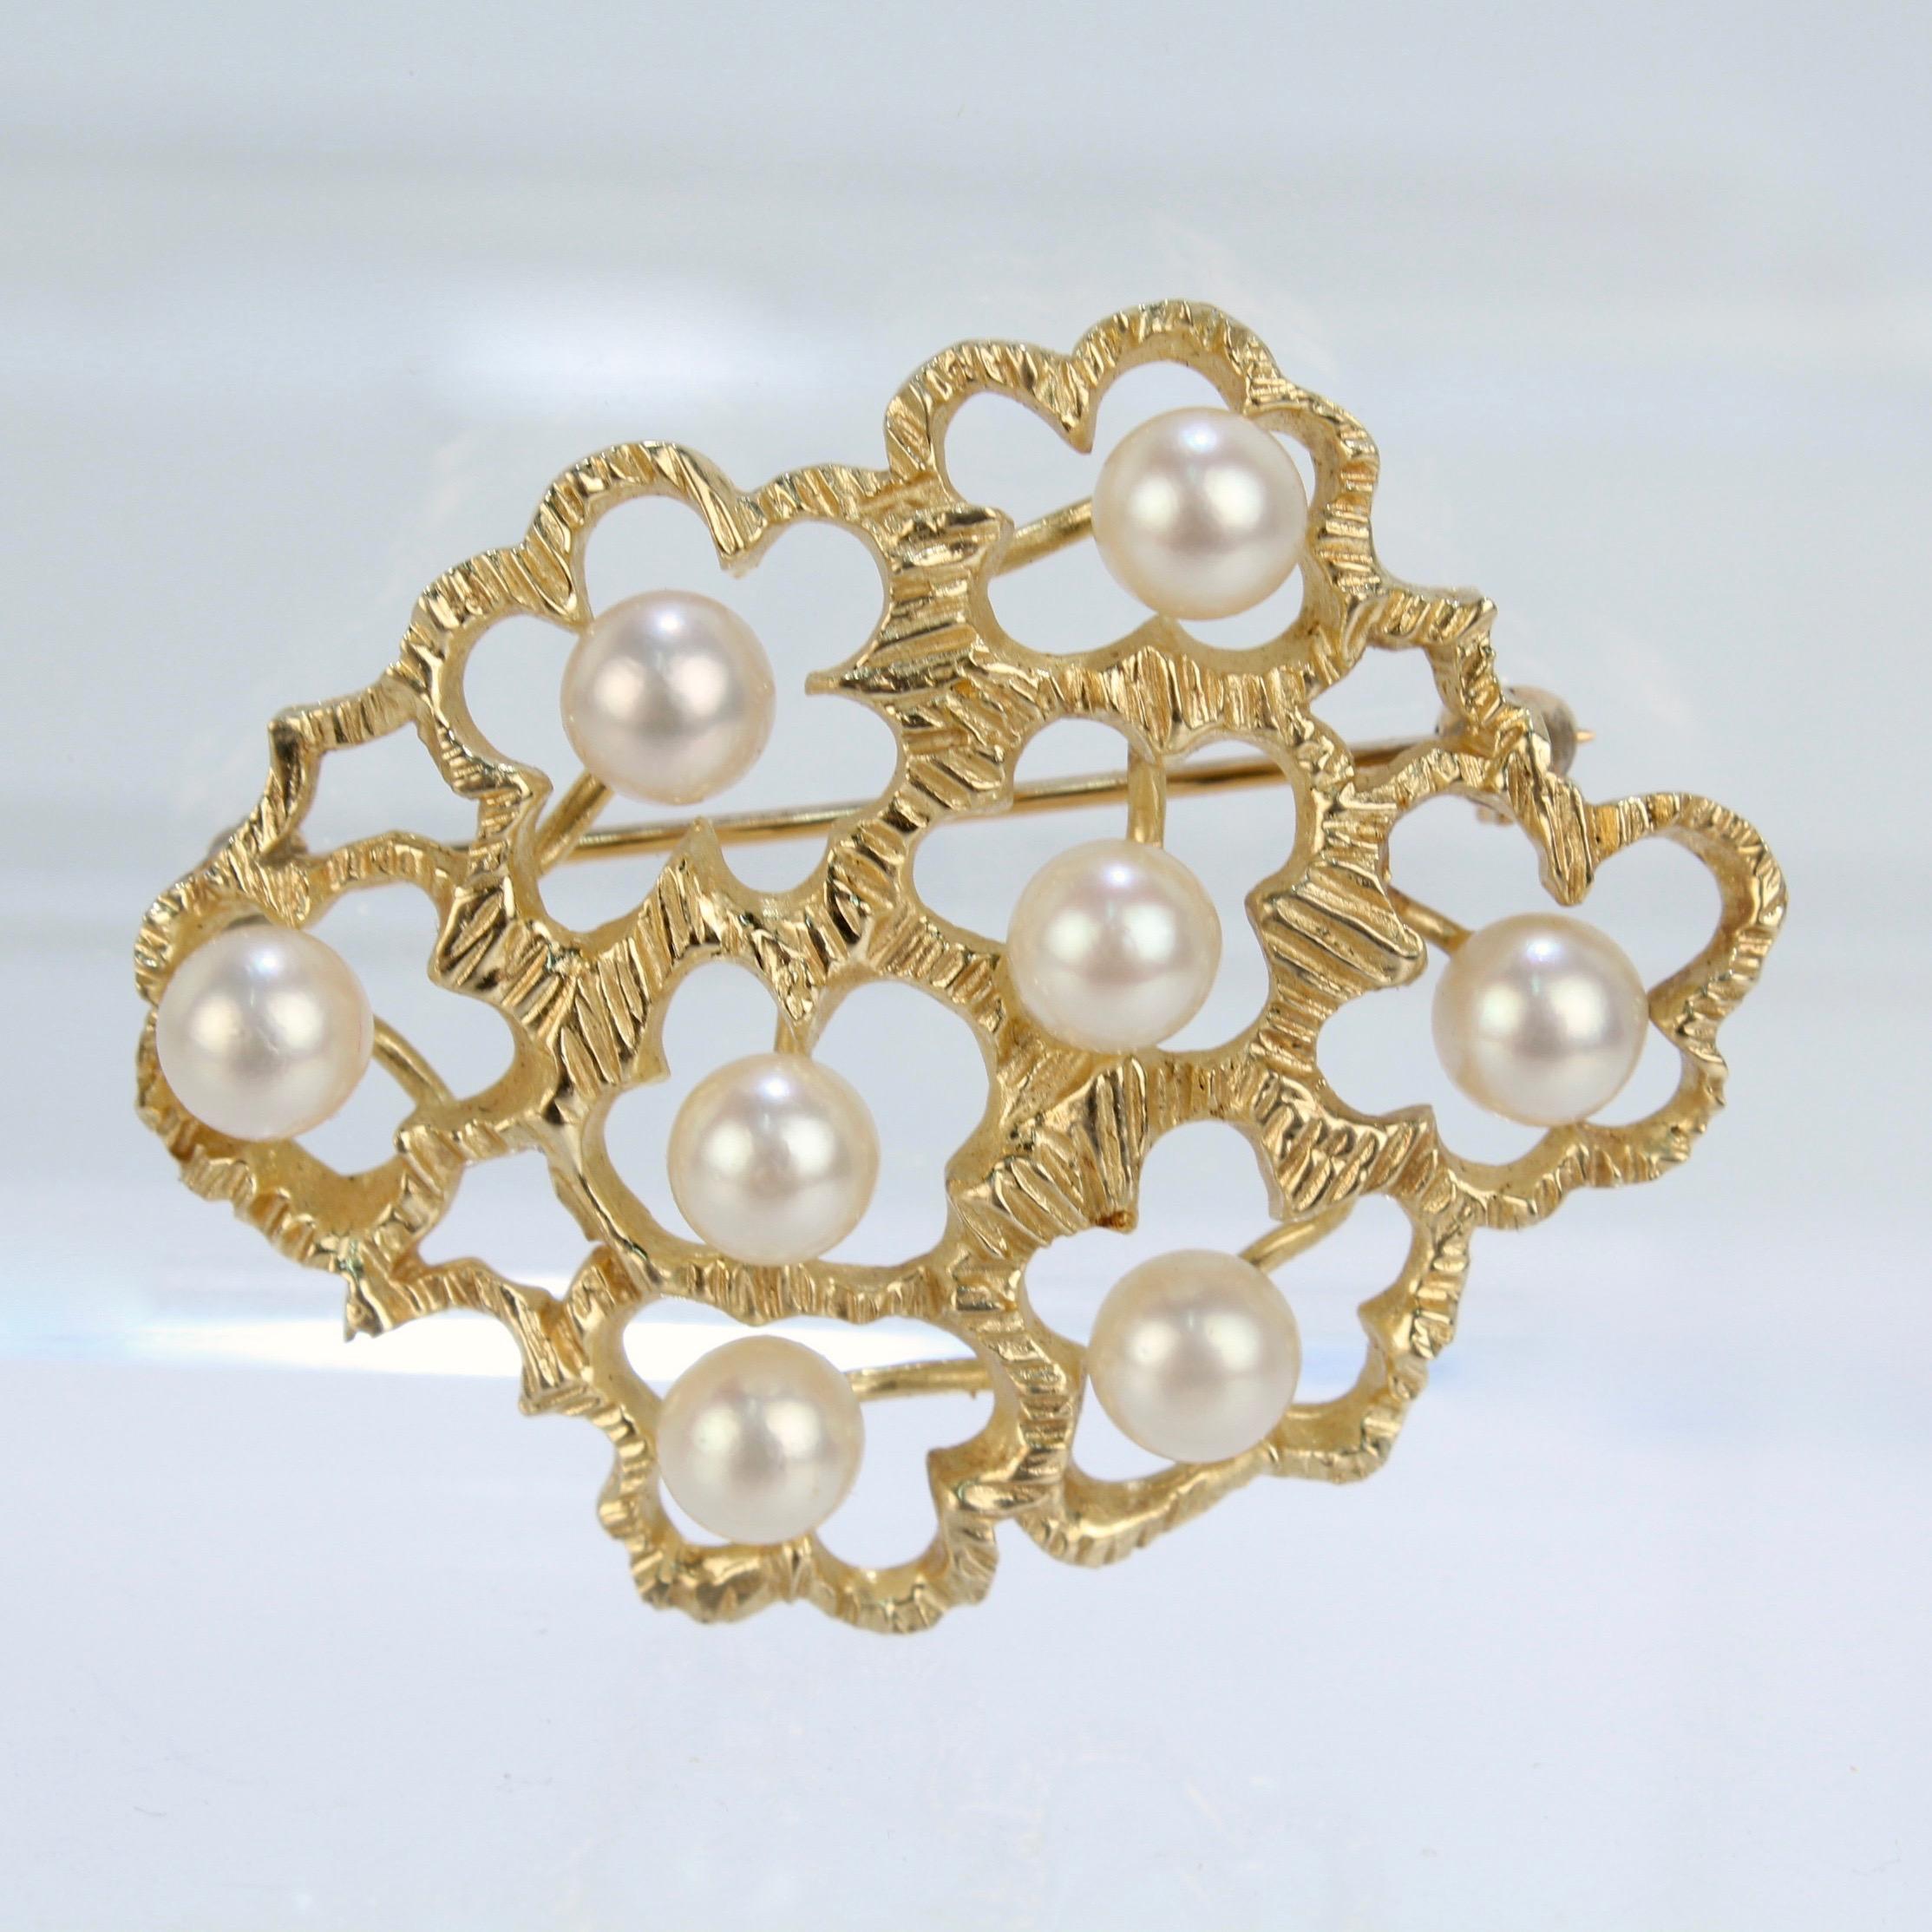 Eine wunderschöne Brosche aus 14k Gelbgold, besetzt mit 8 runden, weißen Perlen.

Die Brosche hat ein modernistisches Design, das an einen Strauß stilisierter mehrblättriger Blumen mit je einer Perle in der Mitte erinnert.

Auf der Rückseite 14k für